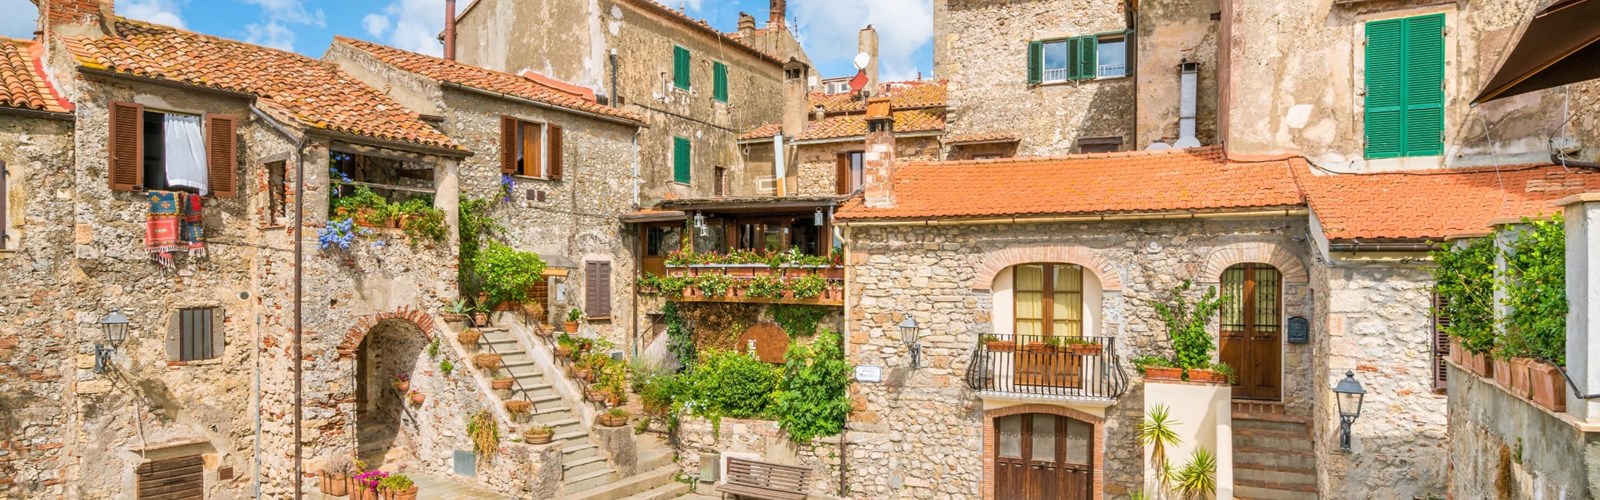 Capalbio, landsby i Maremma i Toscana i Italien